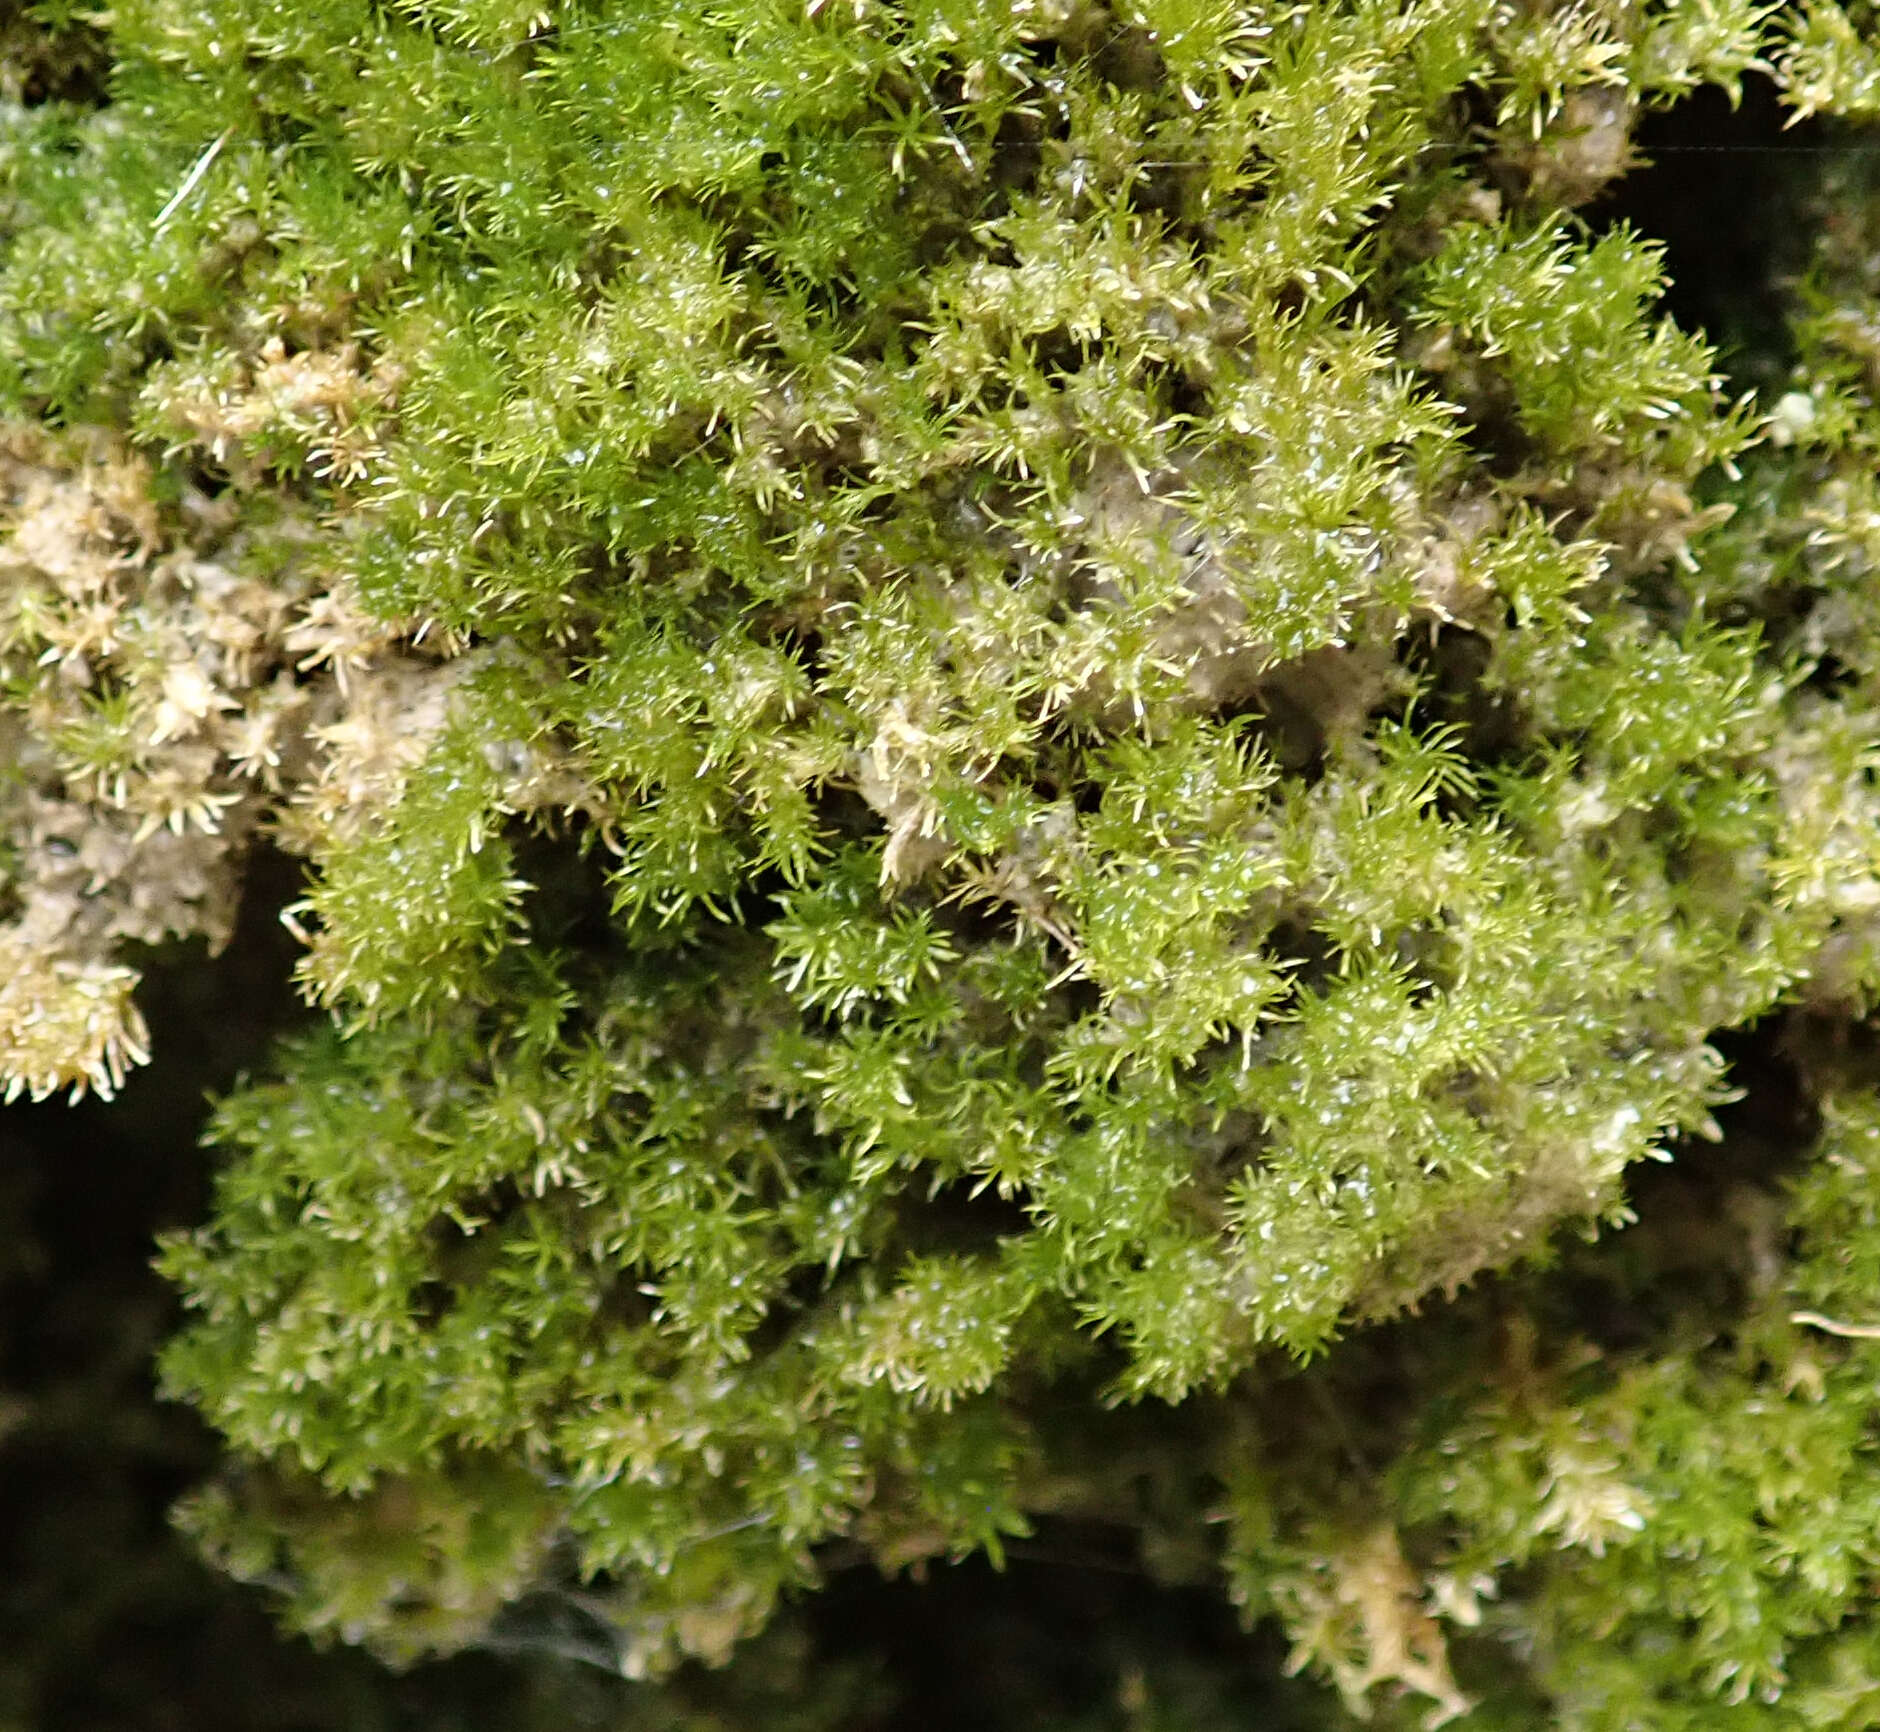 Image of eucladium moss